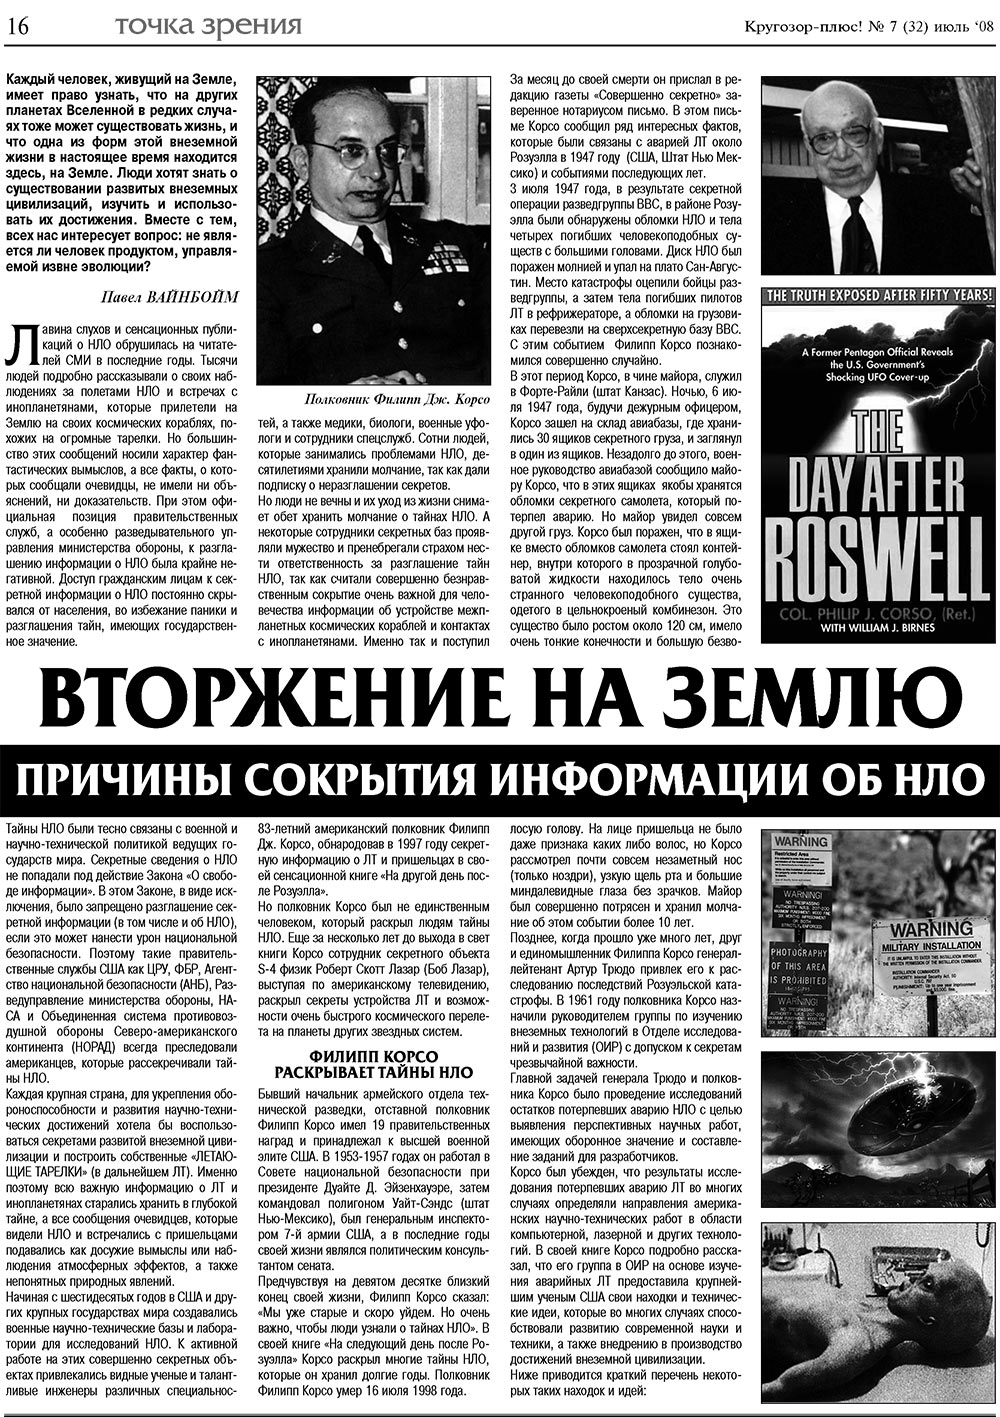 Кругозор плюс!, газета. 2008 №7 стр.16